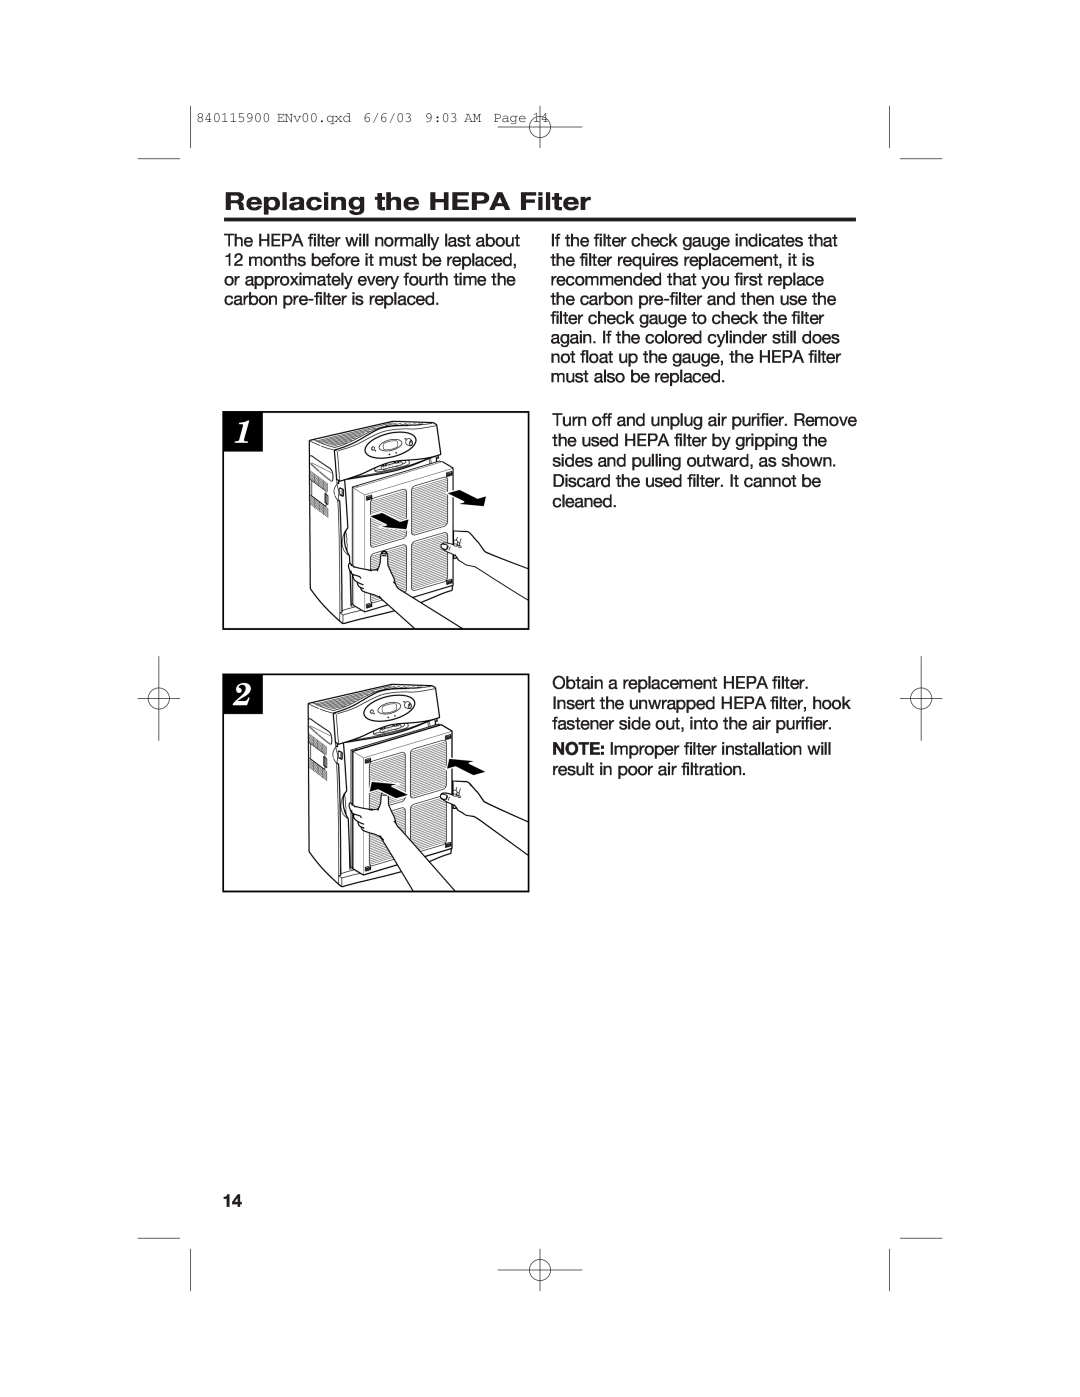 Hamilton Beach 840115900 manual Replacing the HEPA Filter 